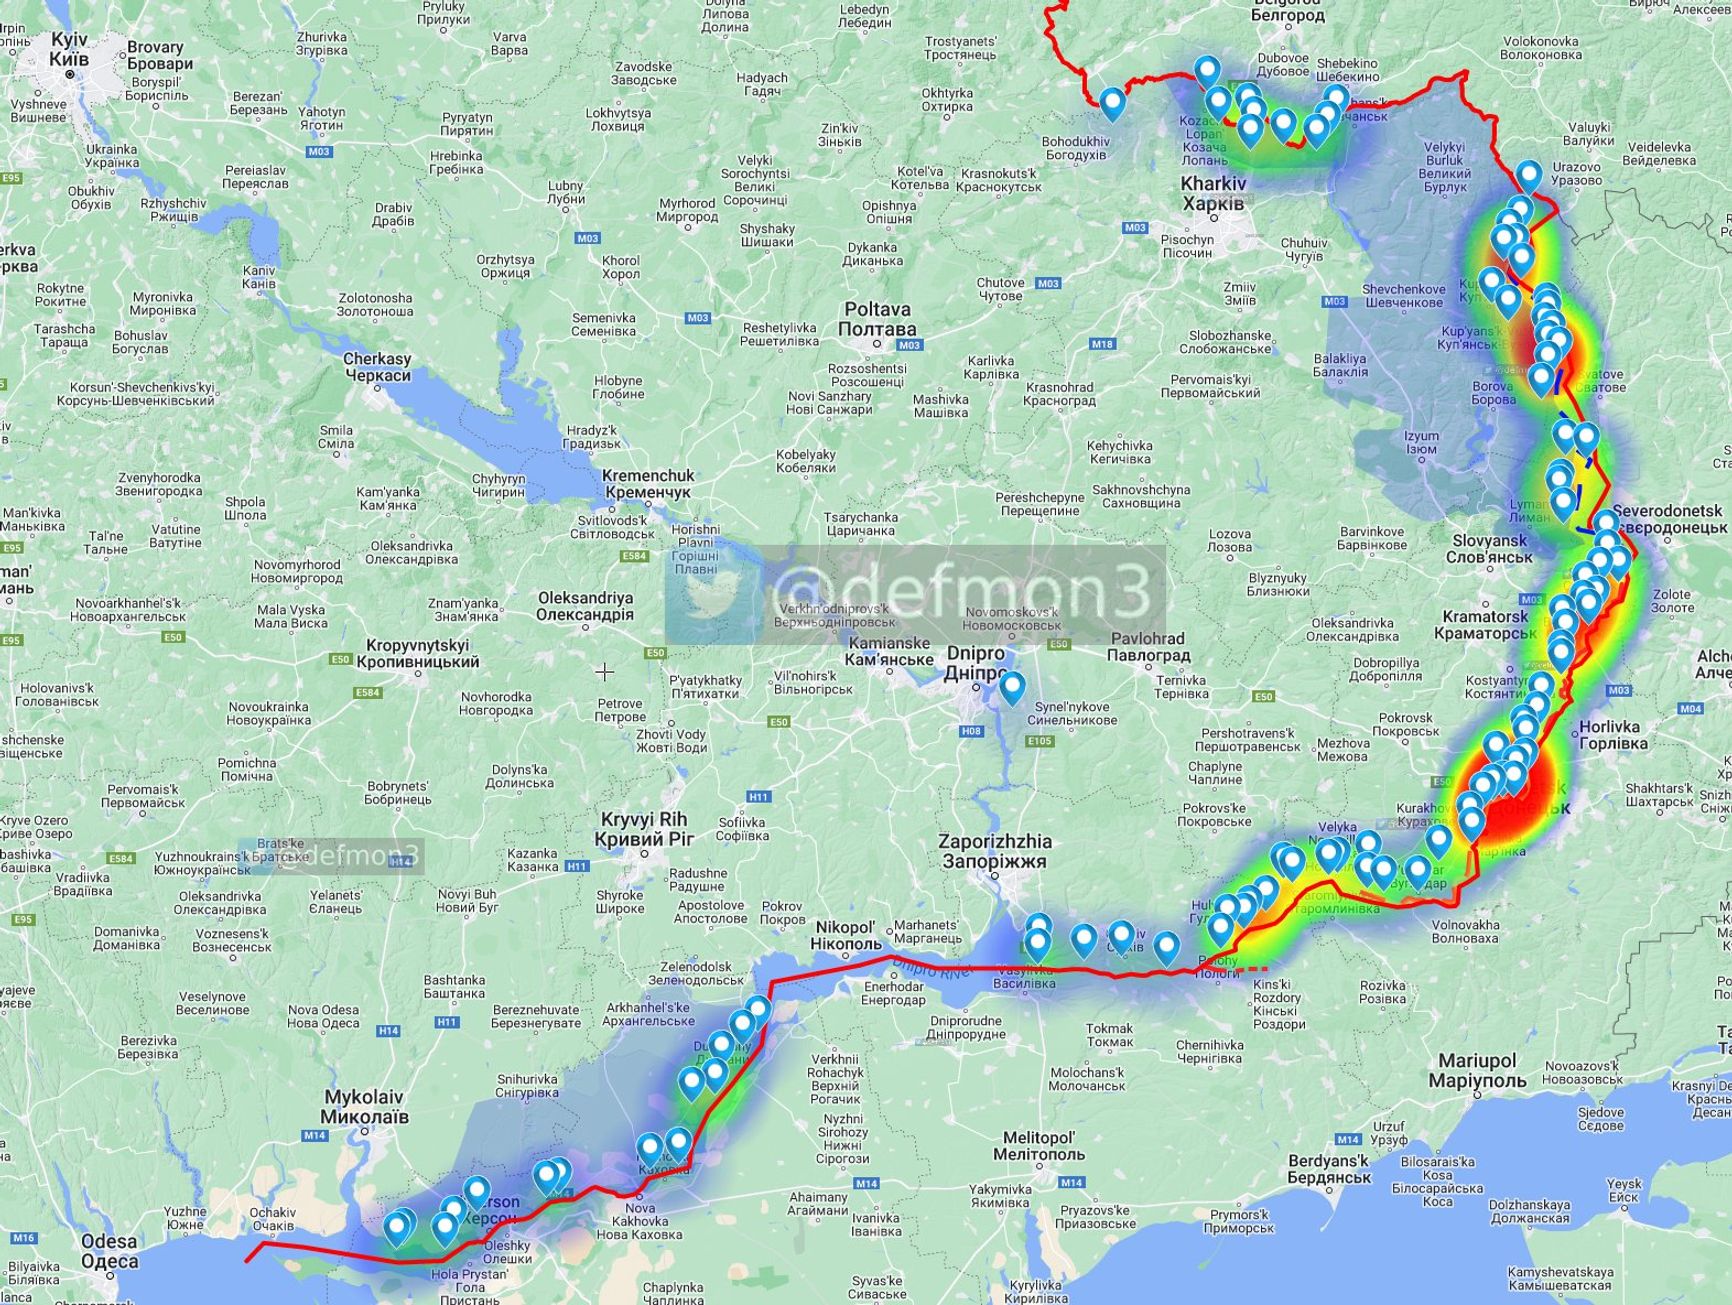 Россия перебрасывает десантников на Донбасс, появились данные об отступлении россиян на левом берегу Днепра. Что происходит на линии фронта